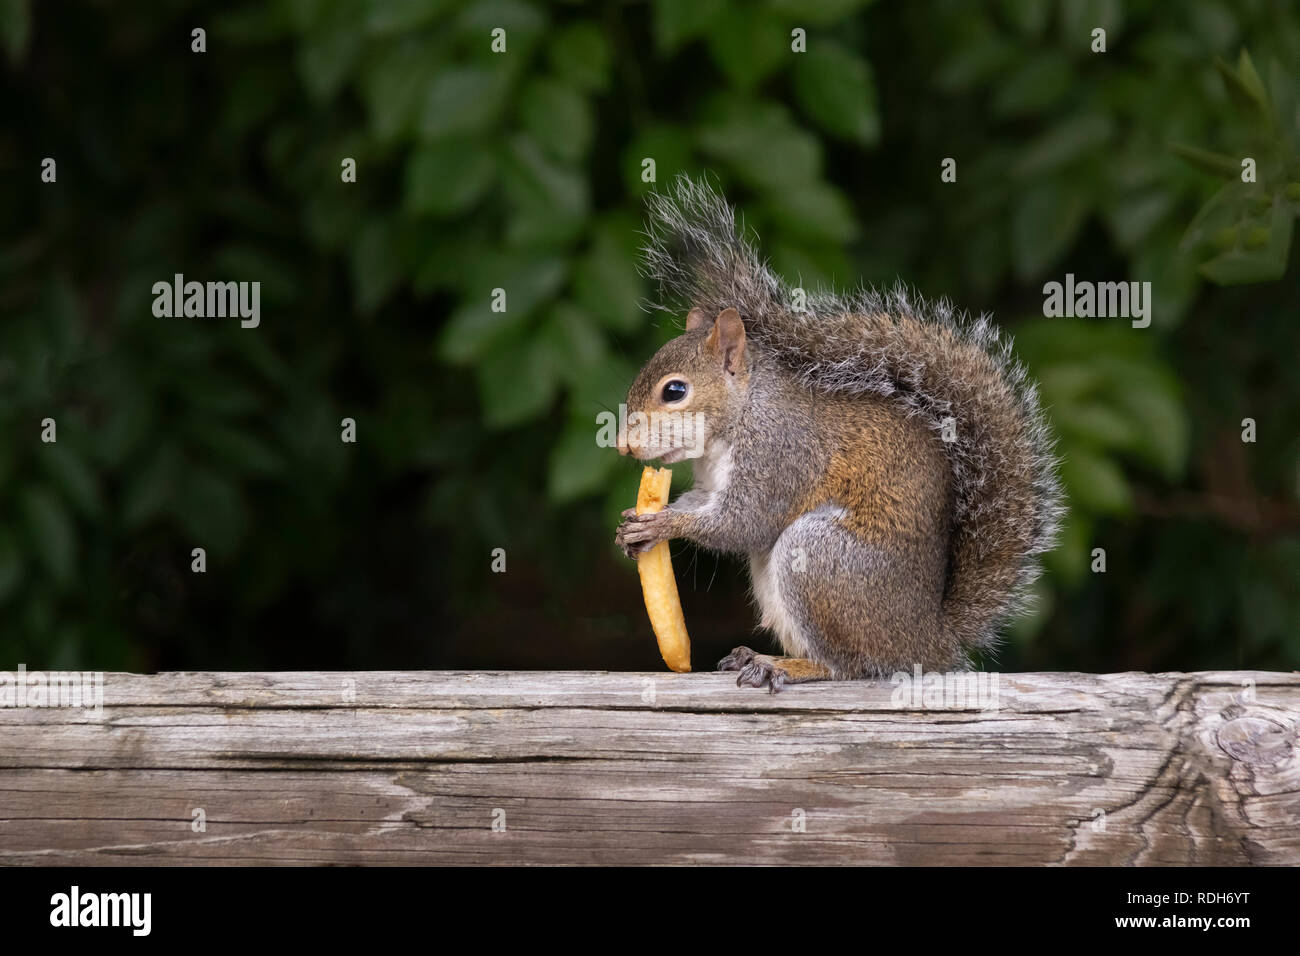 Un écureuil se dresse sur un rail pont calmement manger une frite. Queue enveloppé les yeux fixés de l'avant avec un profil tourné trouvés frites. Banque D'Images